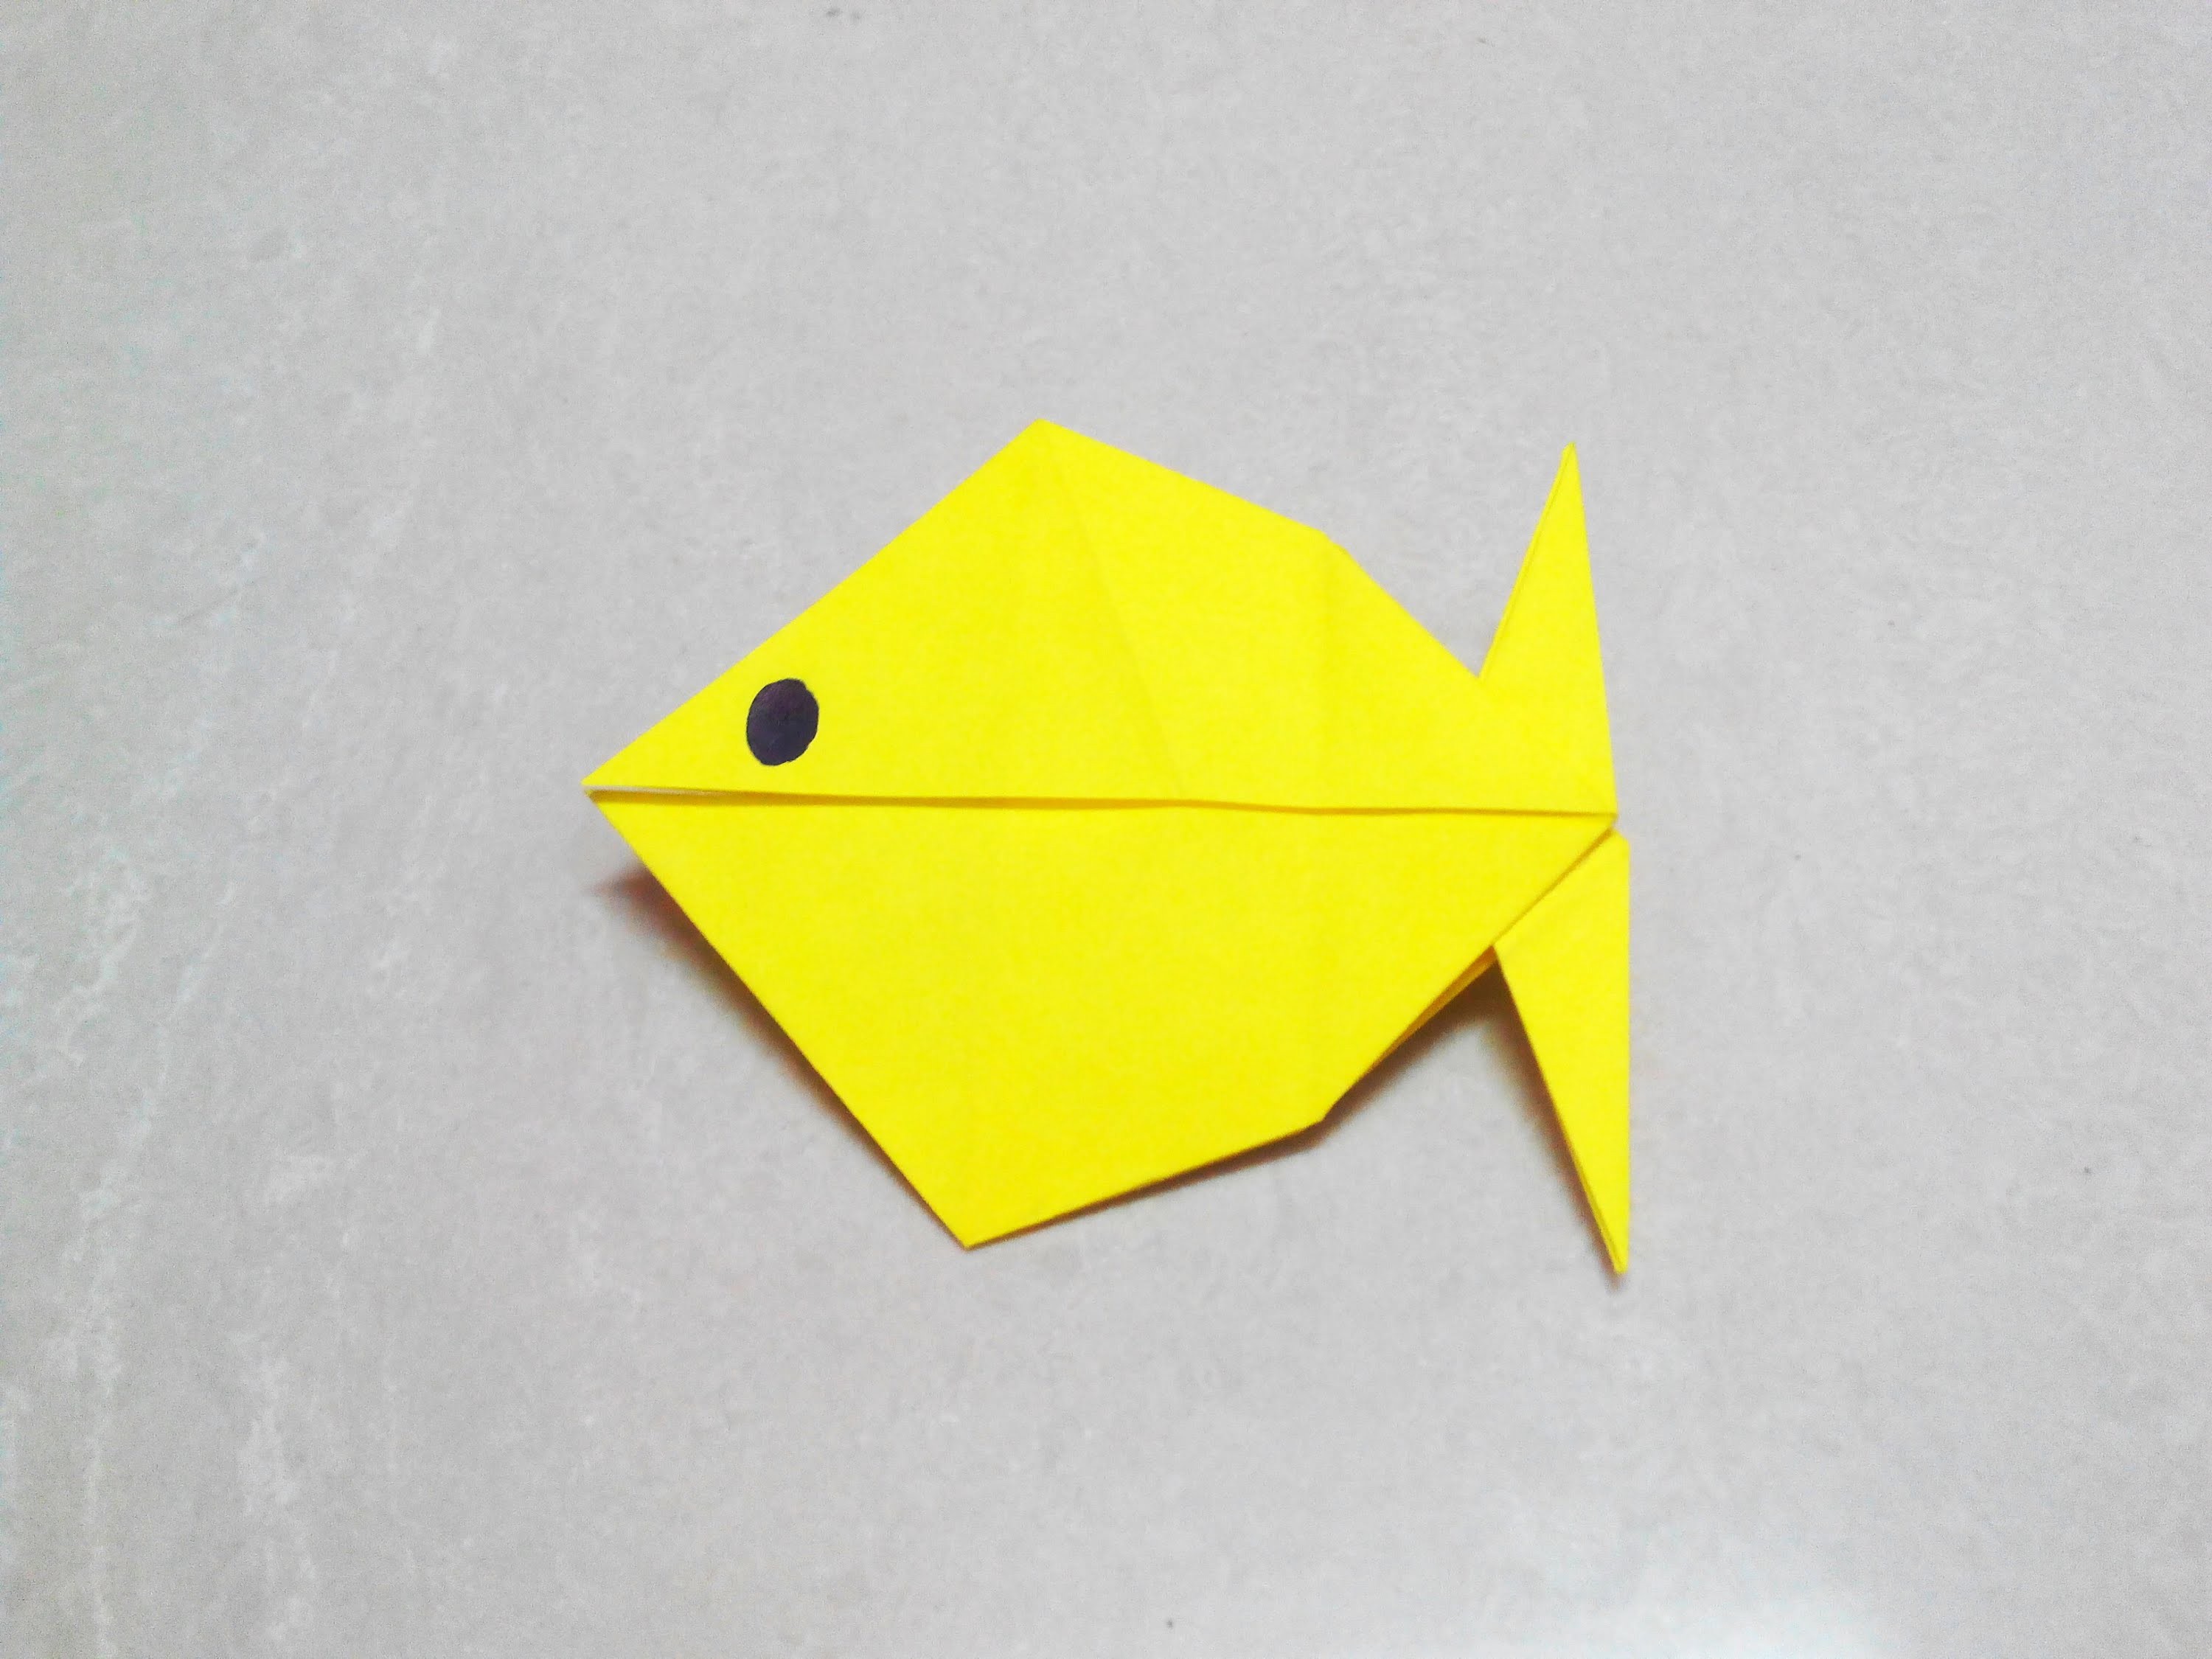 Оригами рыбка видео: Оригами рыбка - Как сделать рыбку из бумаги. Origami fish смотреть онлайн видео от Хочу Творить в хорошем качестве.